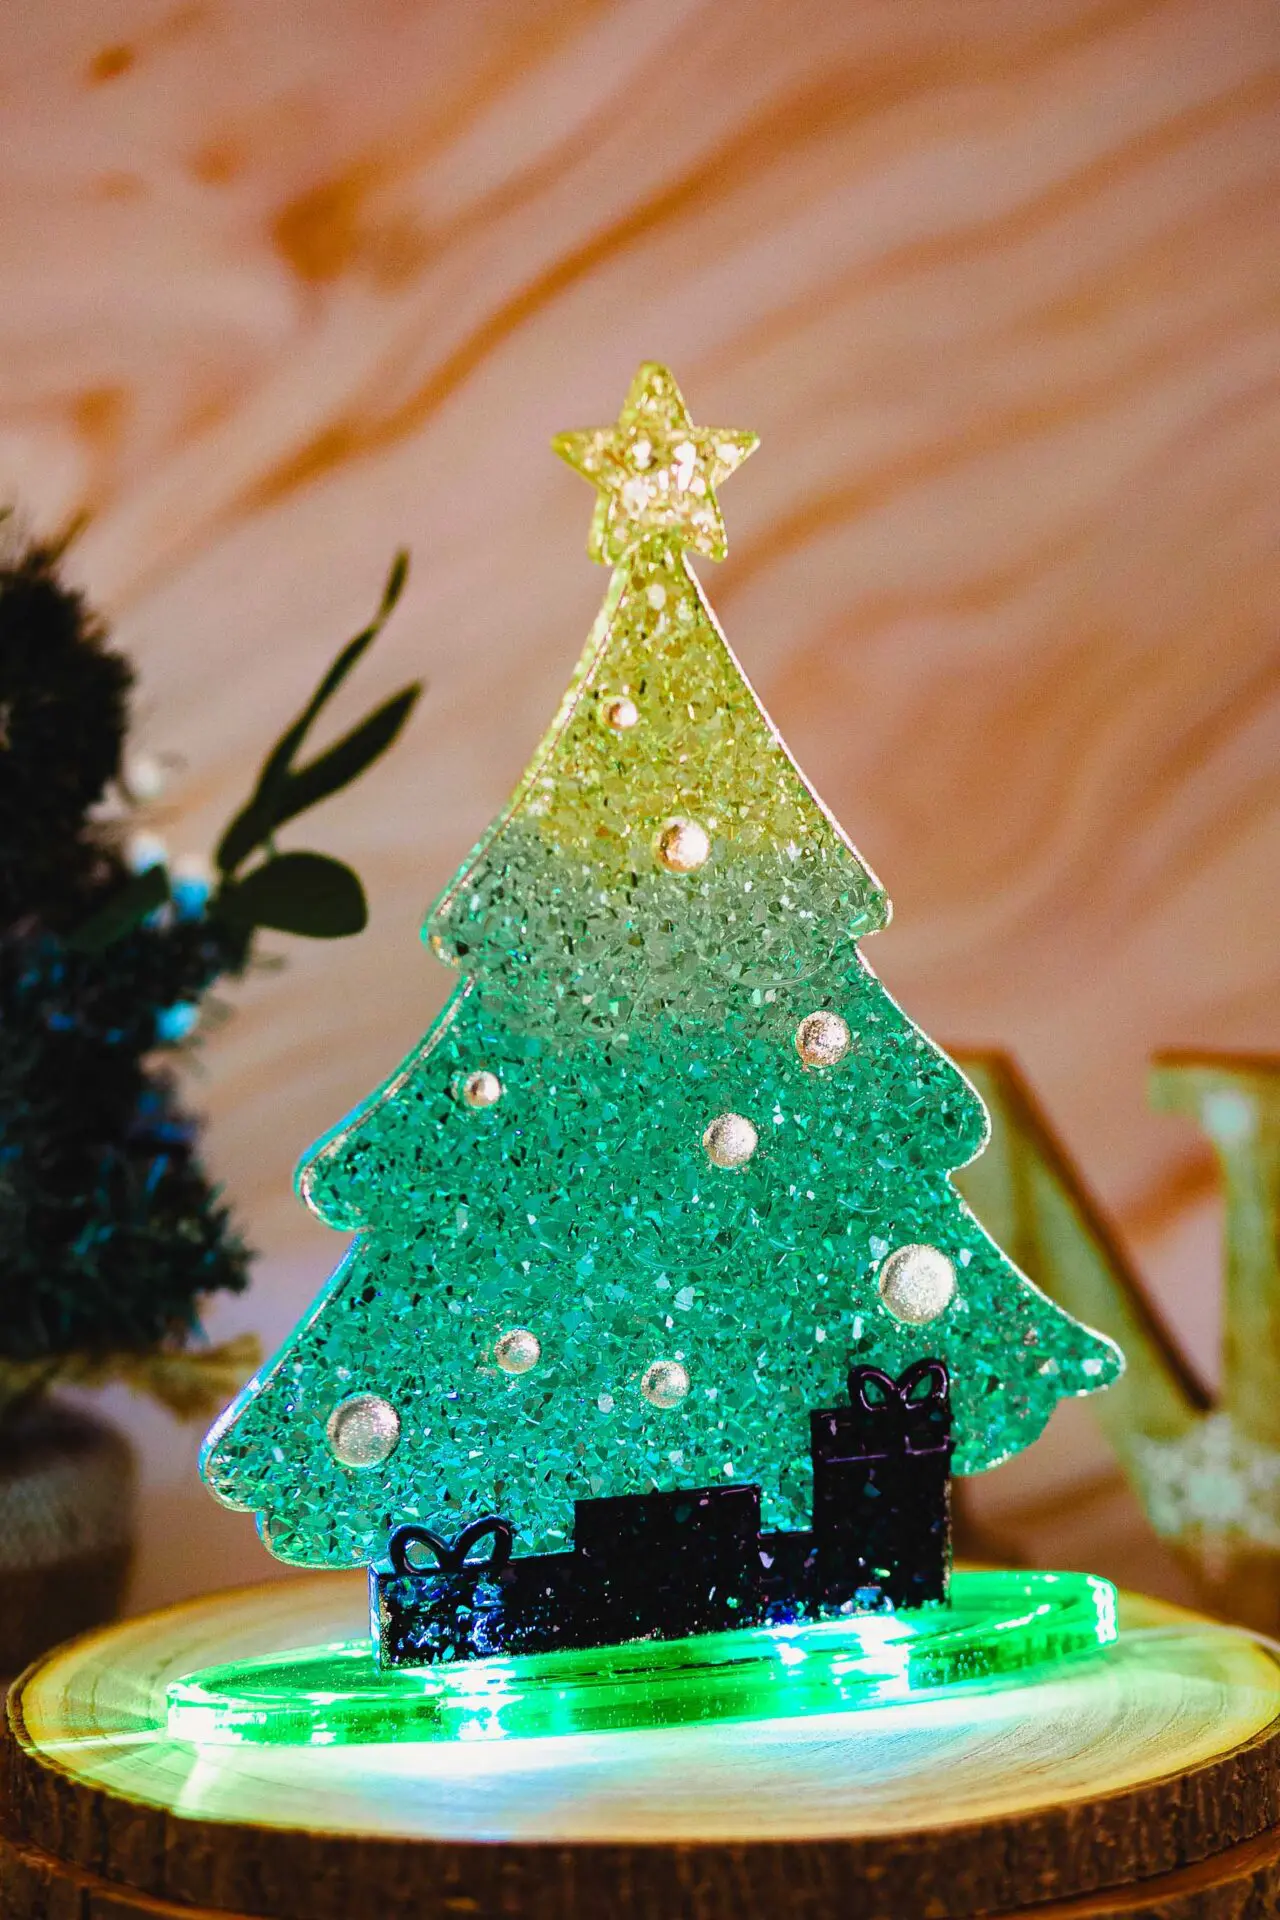 Décoration lumineuse de Noël - Sapin de Noël lumineux à poser sur la table - couleur vert, rouge et doré - Boutique en ligne d'idées cadeaux et de décoration pour la fête des mères, la fêtes des pères ou pour un anniversaire enfant ou adulte, pour les fêtes de Noël ou pour tout autre occasion